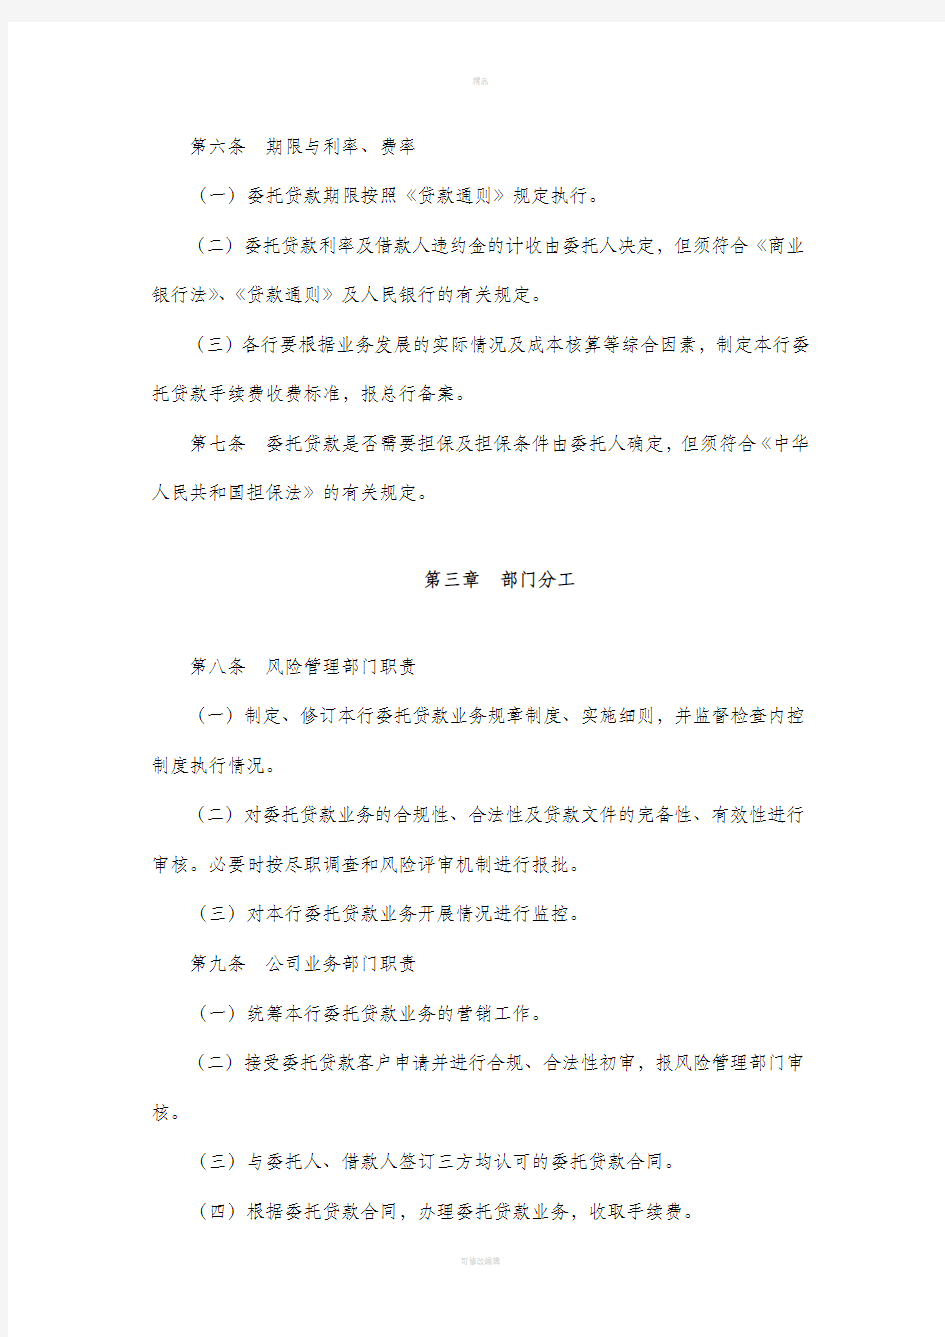 中国银行委托贷款管理暂行规定